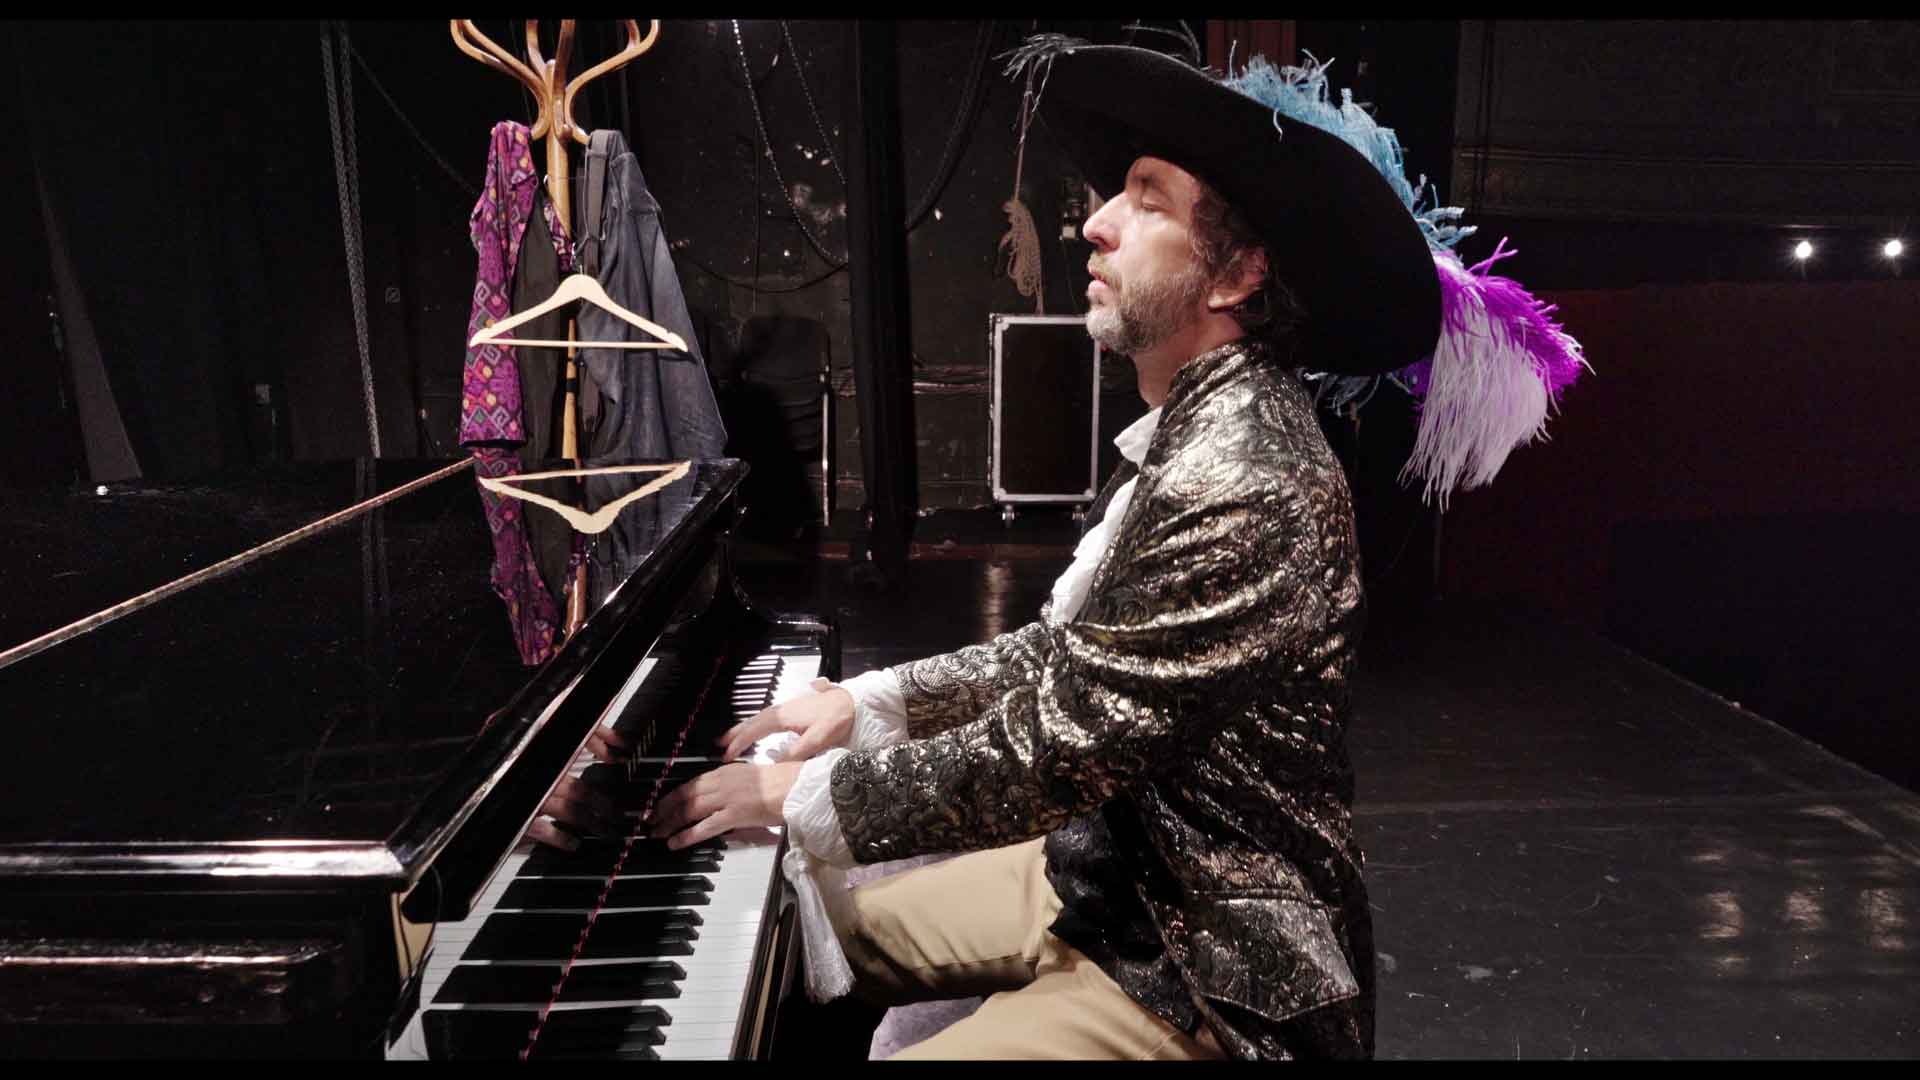 Un homme habillé en mousquetaire joue du piano